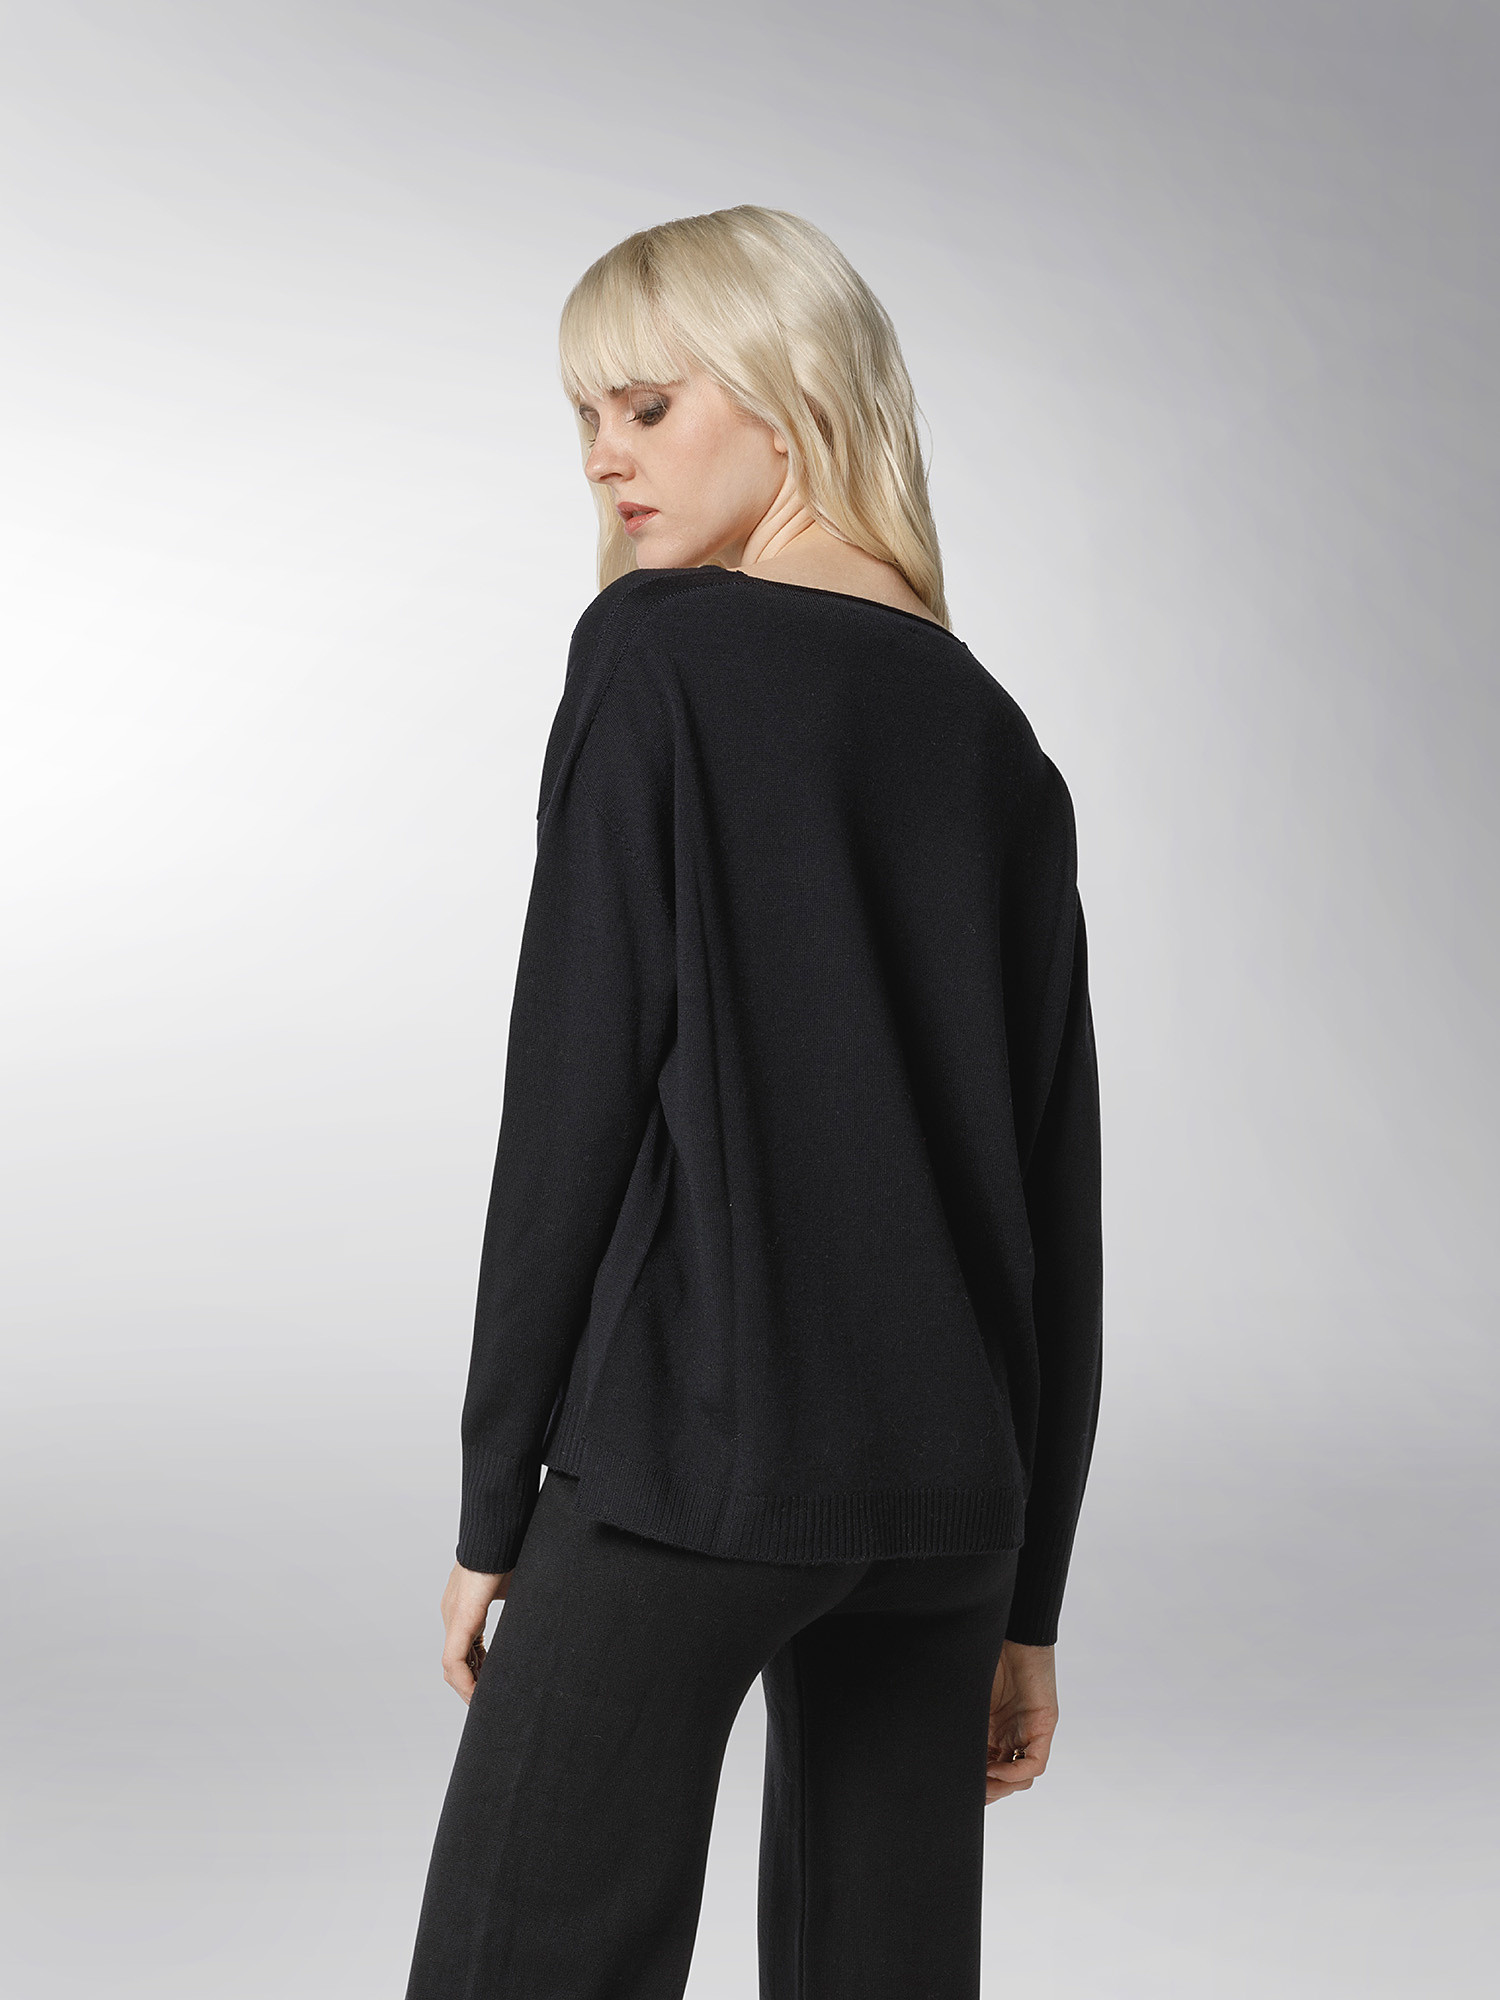 K Collection - V-neck sweater, Black, large image number 4